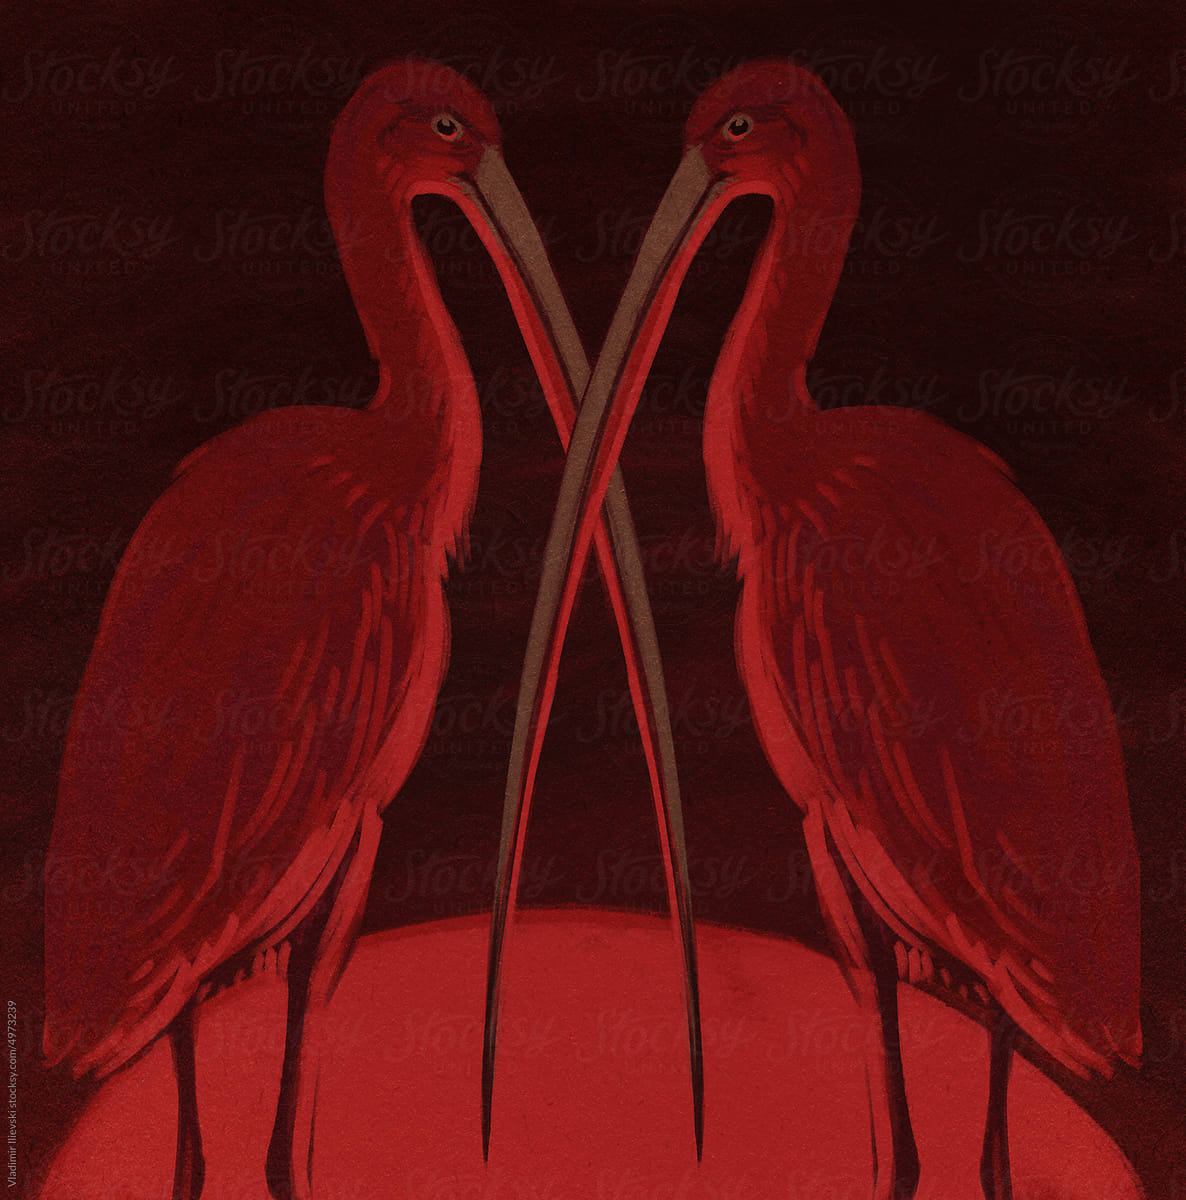 Meeting X: Scarlet Ibises with the Longest Beaks